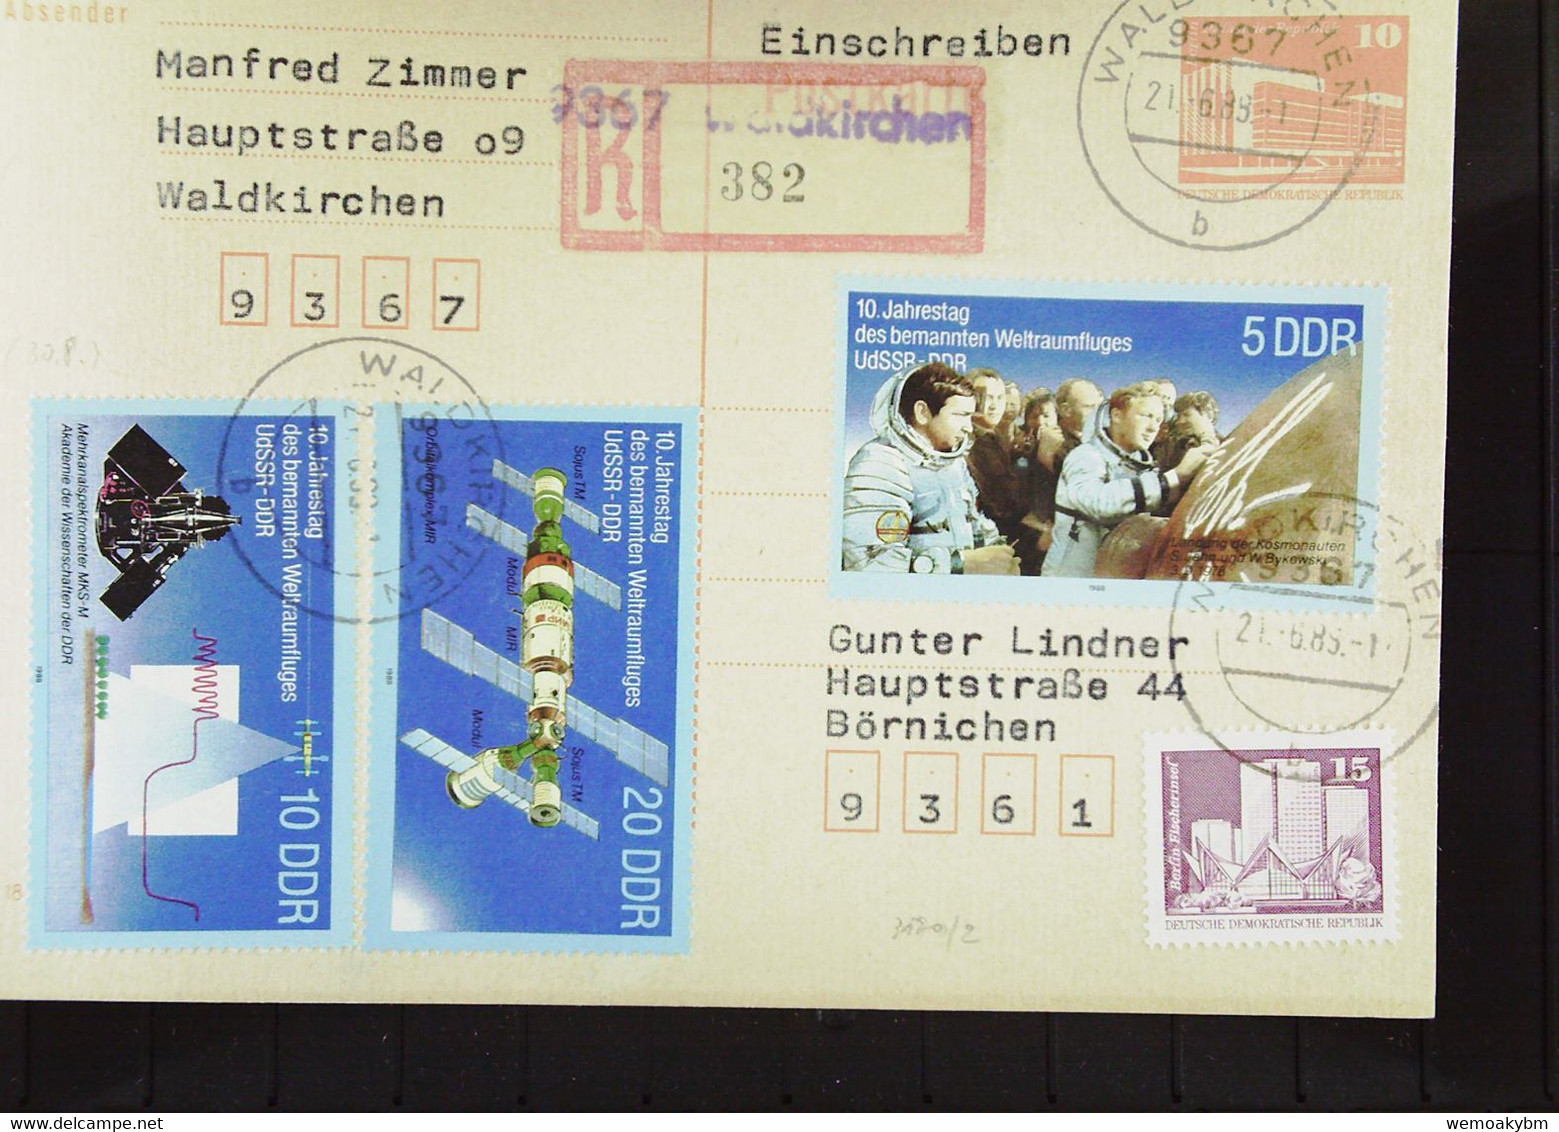 DDR: R-Ganzsachen-Karte Einschreiben Aus 9367 WALDKIRCHEN Mit Aushilfs-R-Zettel (382) Portogenau  21.6.88 Knr: 3190, GA - Etiquetas De Certificado